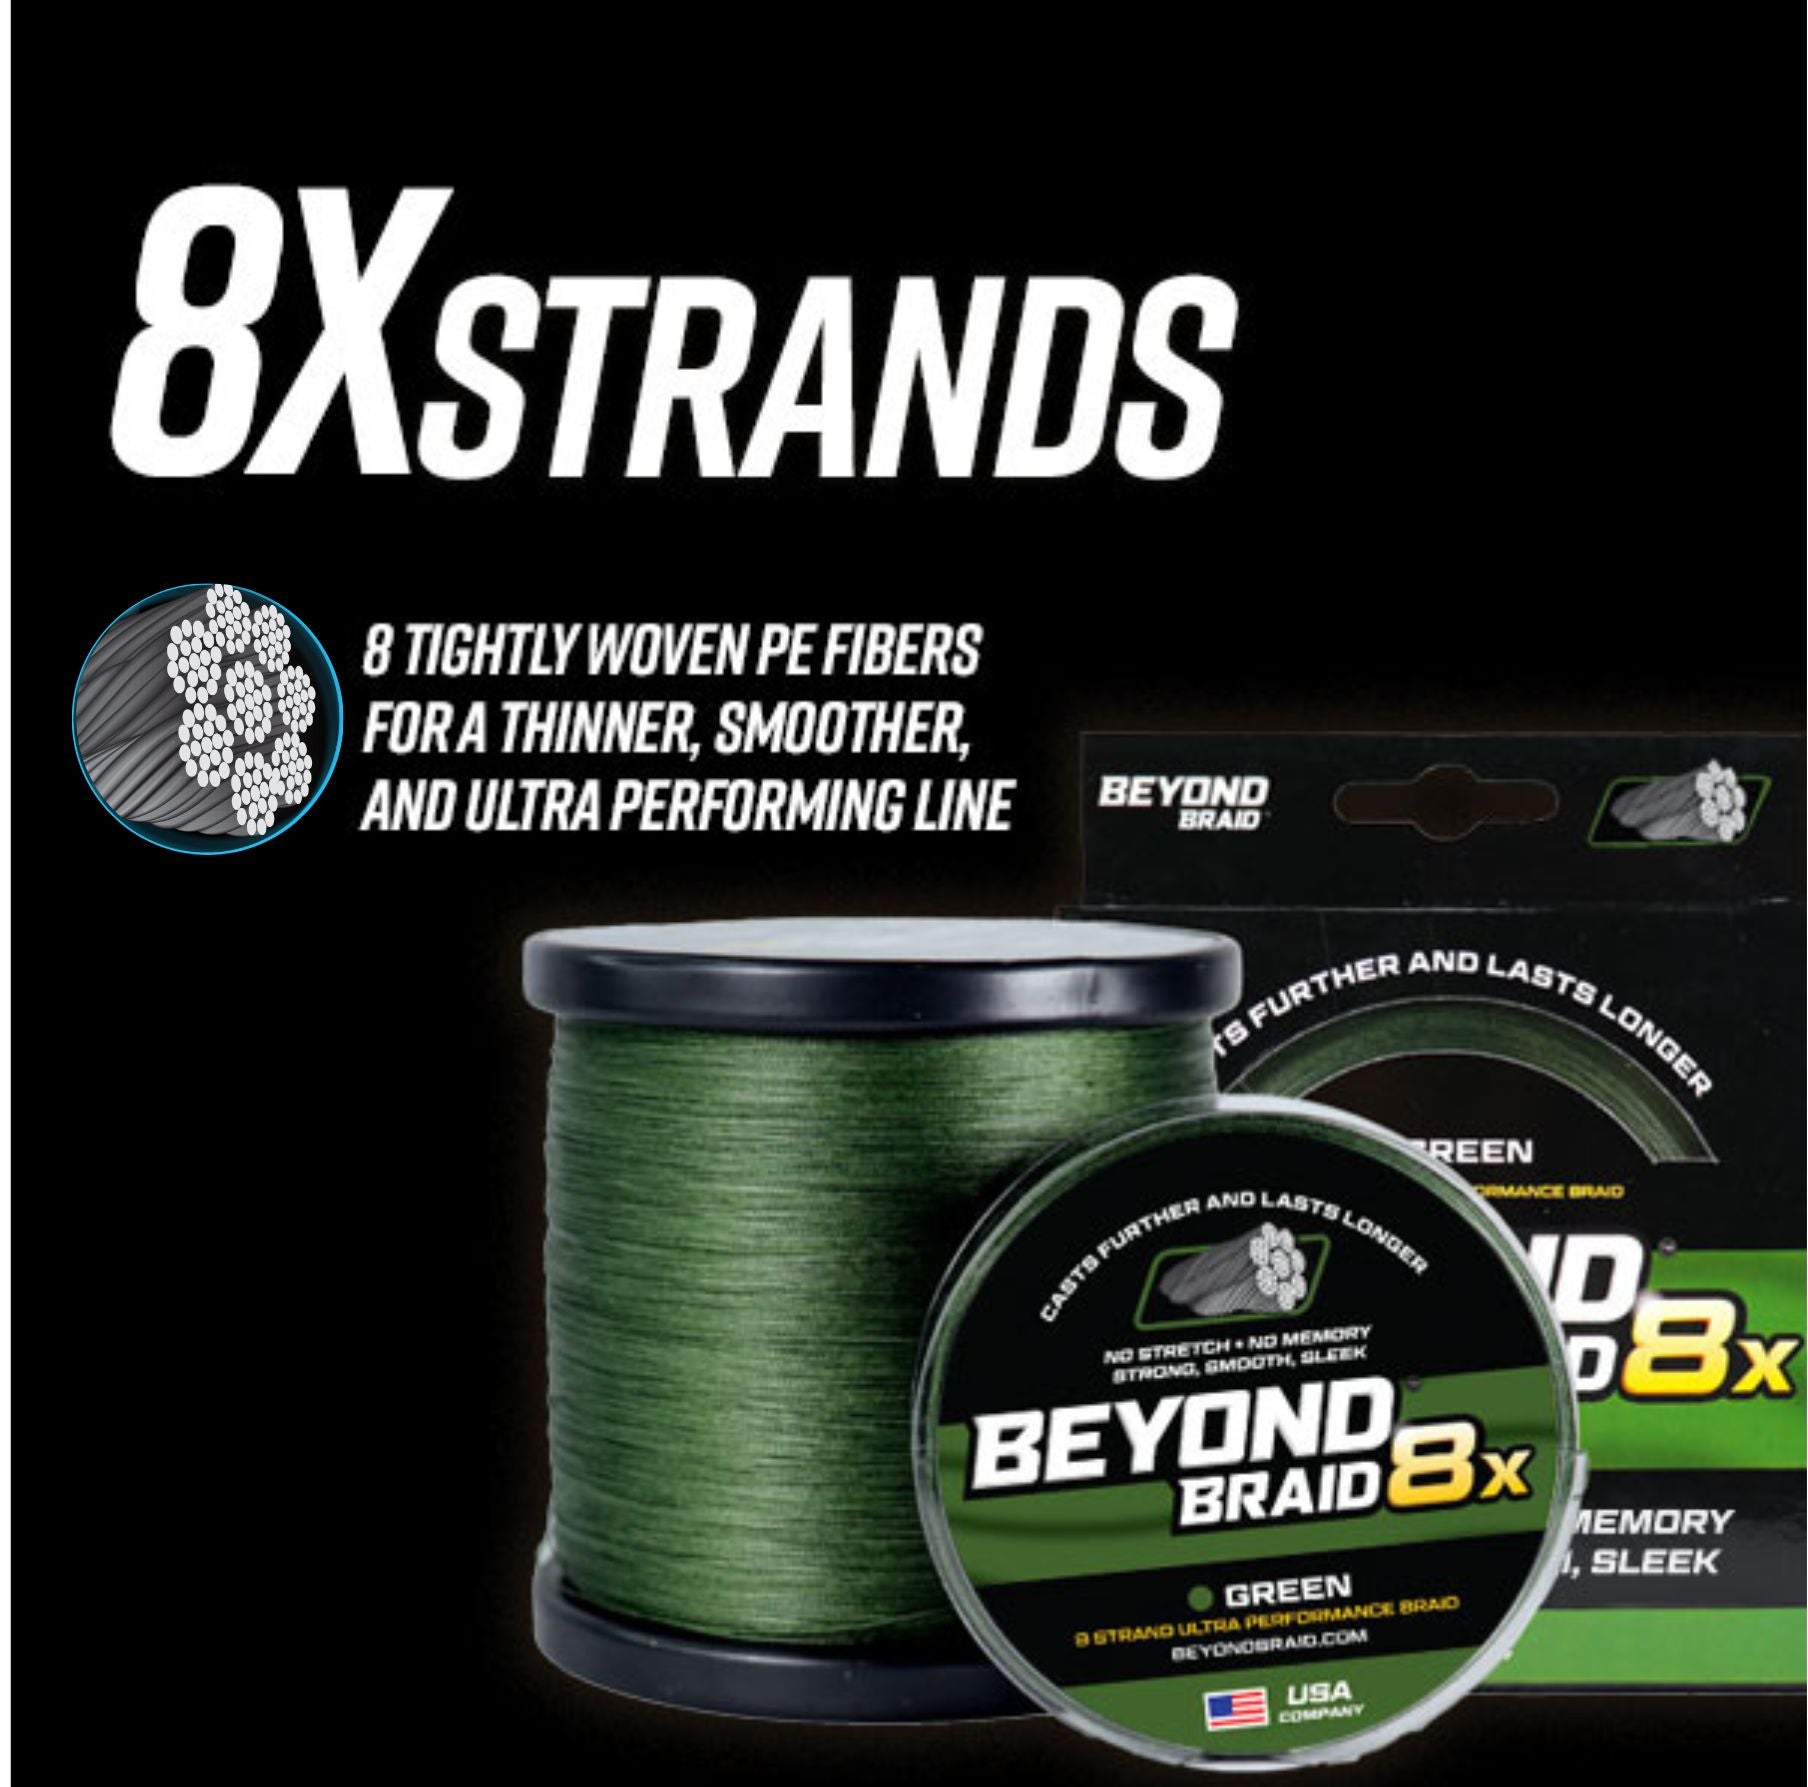 BEYOND BRAID 8X Series - Ultra Performance 8 Strand Braid, Beyond Braid 